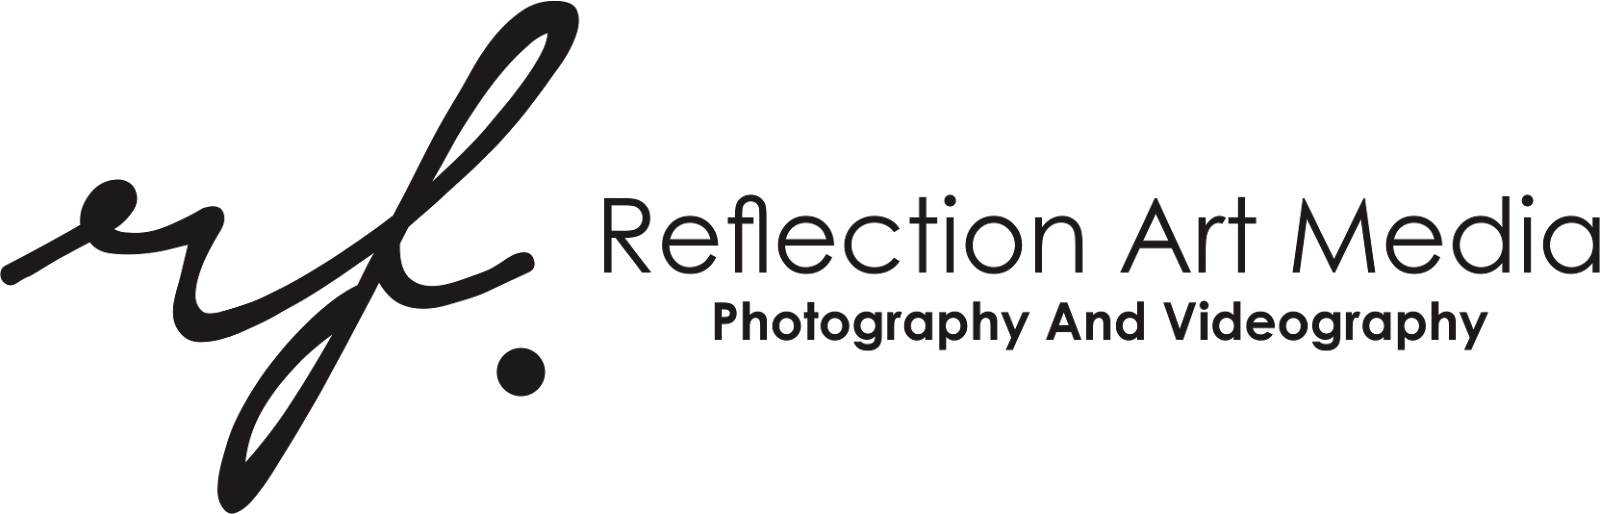 Lowongan Kerja di Reflection Art Media - Yogyakarta 